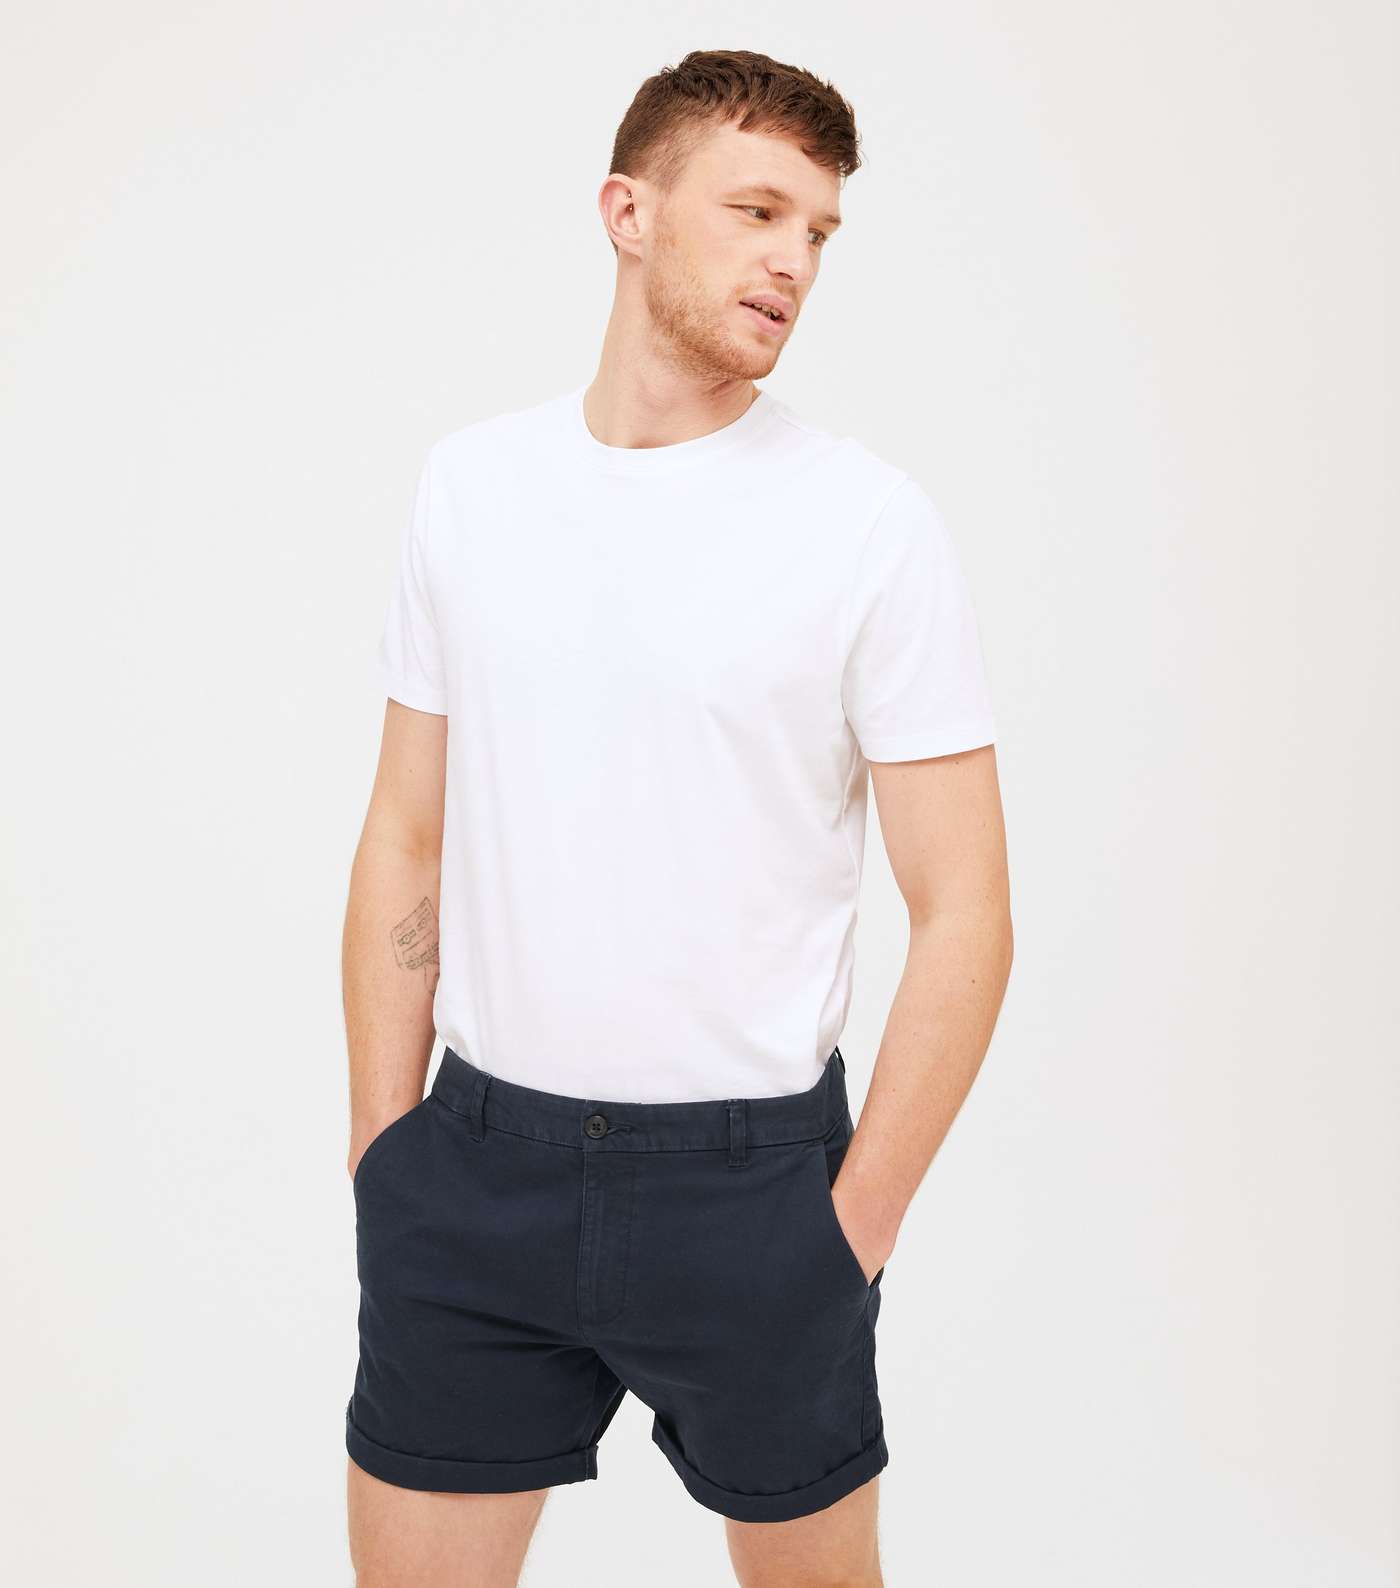 Navy Thigh Length Chino Shorts Image 2